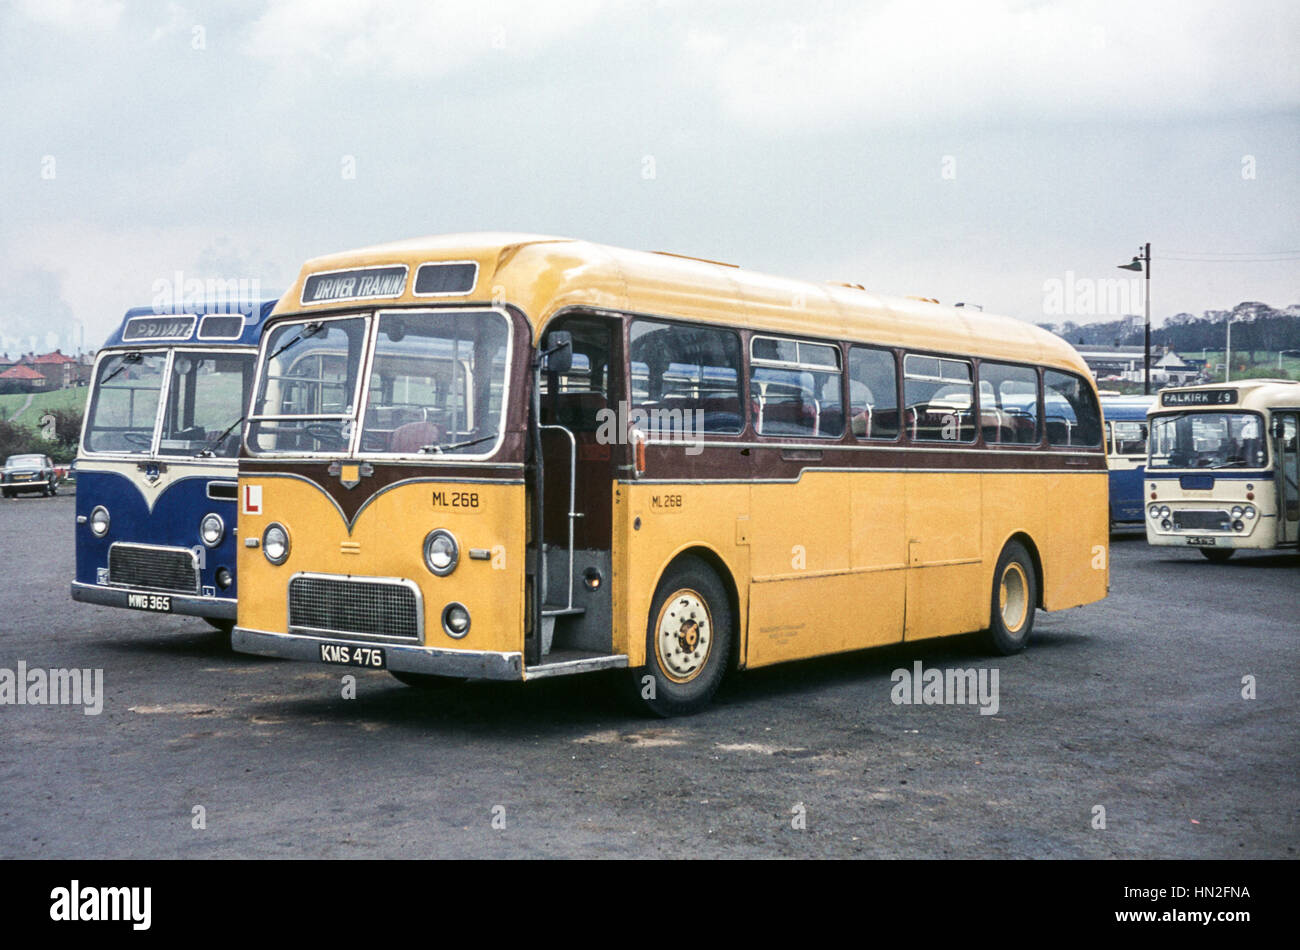 Edimburgo, Reino Unido - 1973: Vintage imagen de autobuses en Edimburgo. Alexander autobuses (inscripciones MWG 365 y 476 kms), estacionado en un patio con Midland autobuses. Foto de stock